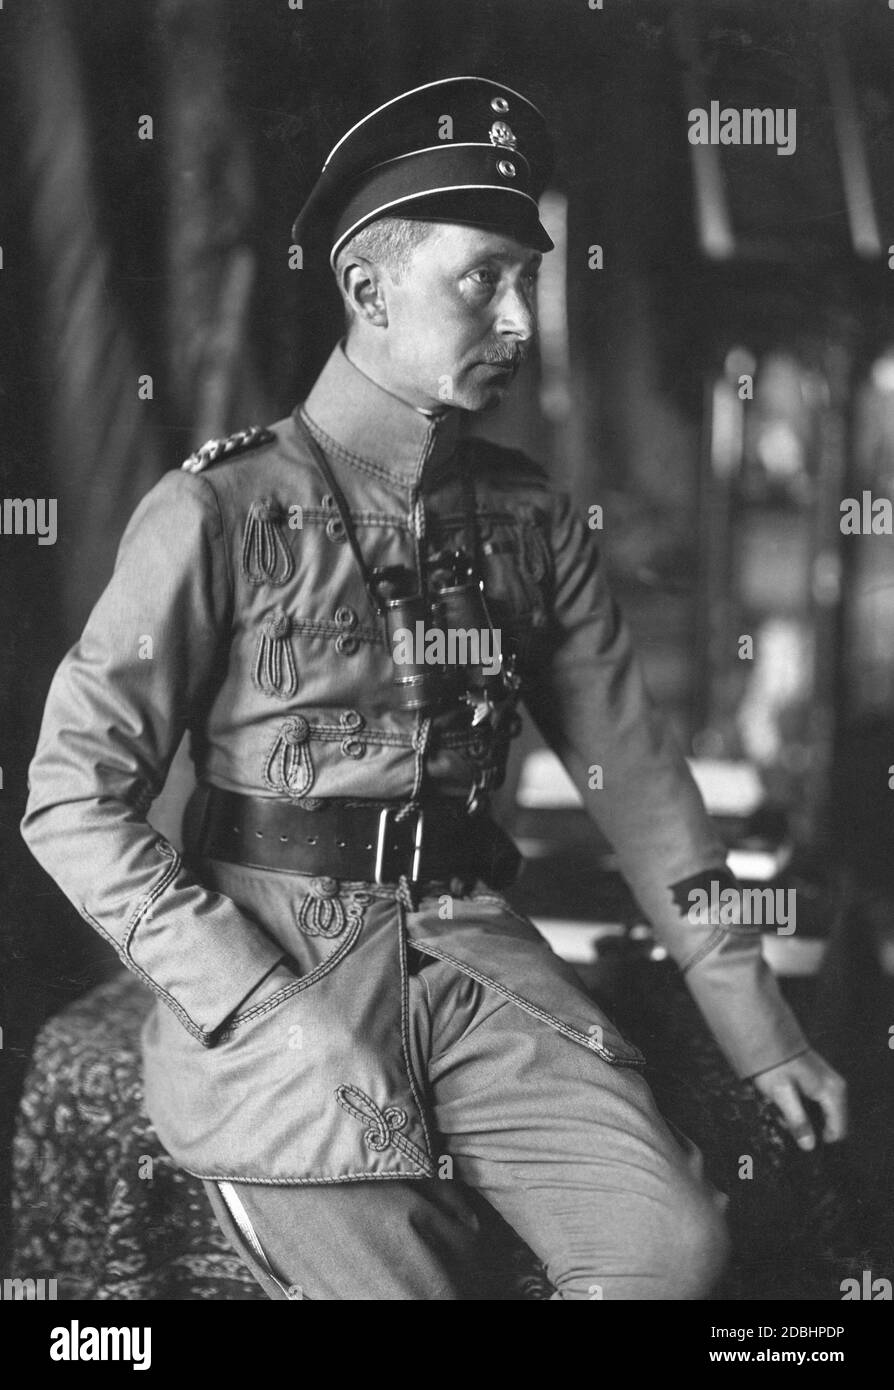 Ritratto del principe ereditario Guglielmo di Prussia al tempo della prima guerra mondiale. Indossa l'uniforme da campo grigia del Danzig Totenkopf Hussars (1. Leib-Husaren-Regiment No. 1), il cui comandante era stato per qualche tempo prima della guerra. Foto Stock